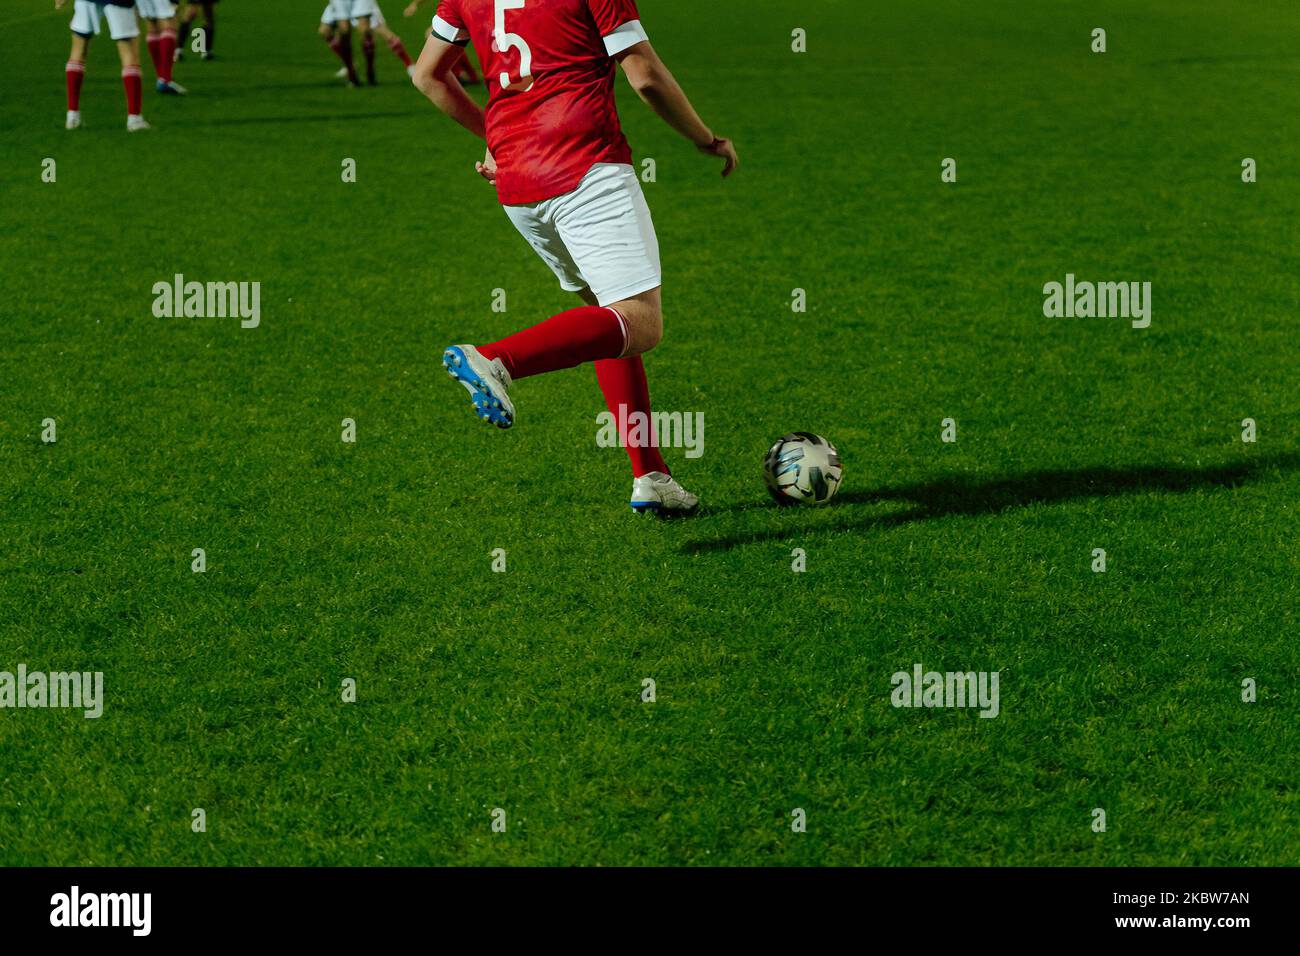 Fußballspieler trifft den Ball während des Fußballspiels Stockfoto